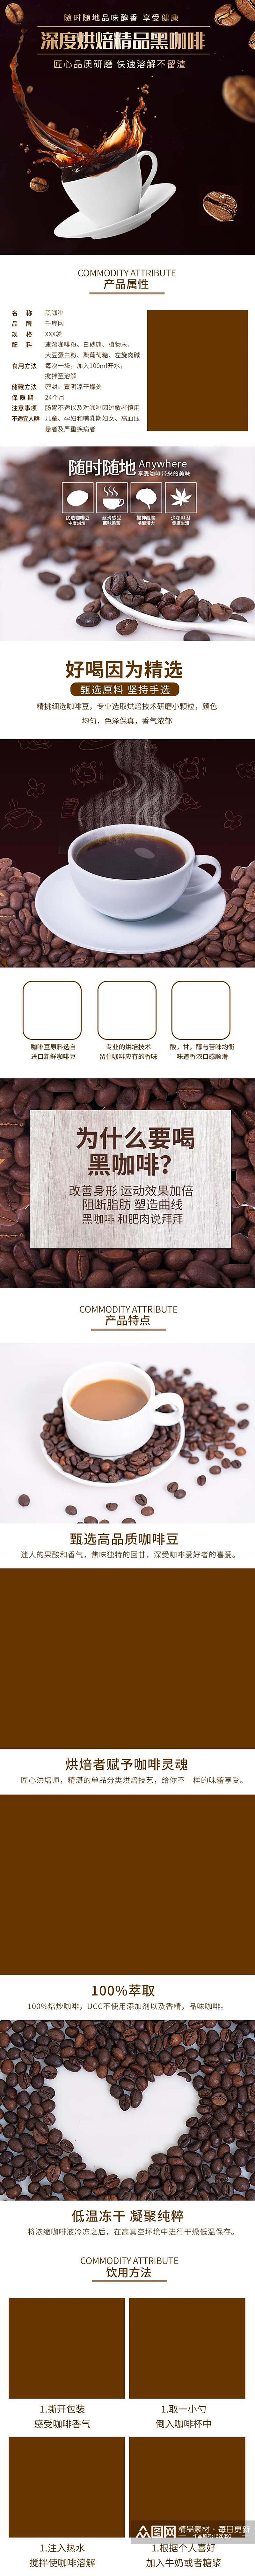 精品无糖黑咖啡食品电商详情页设计素材